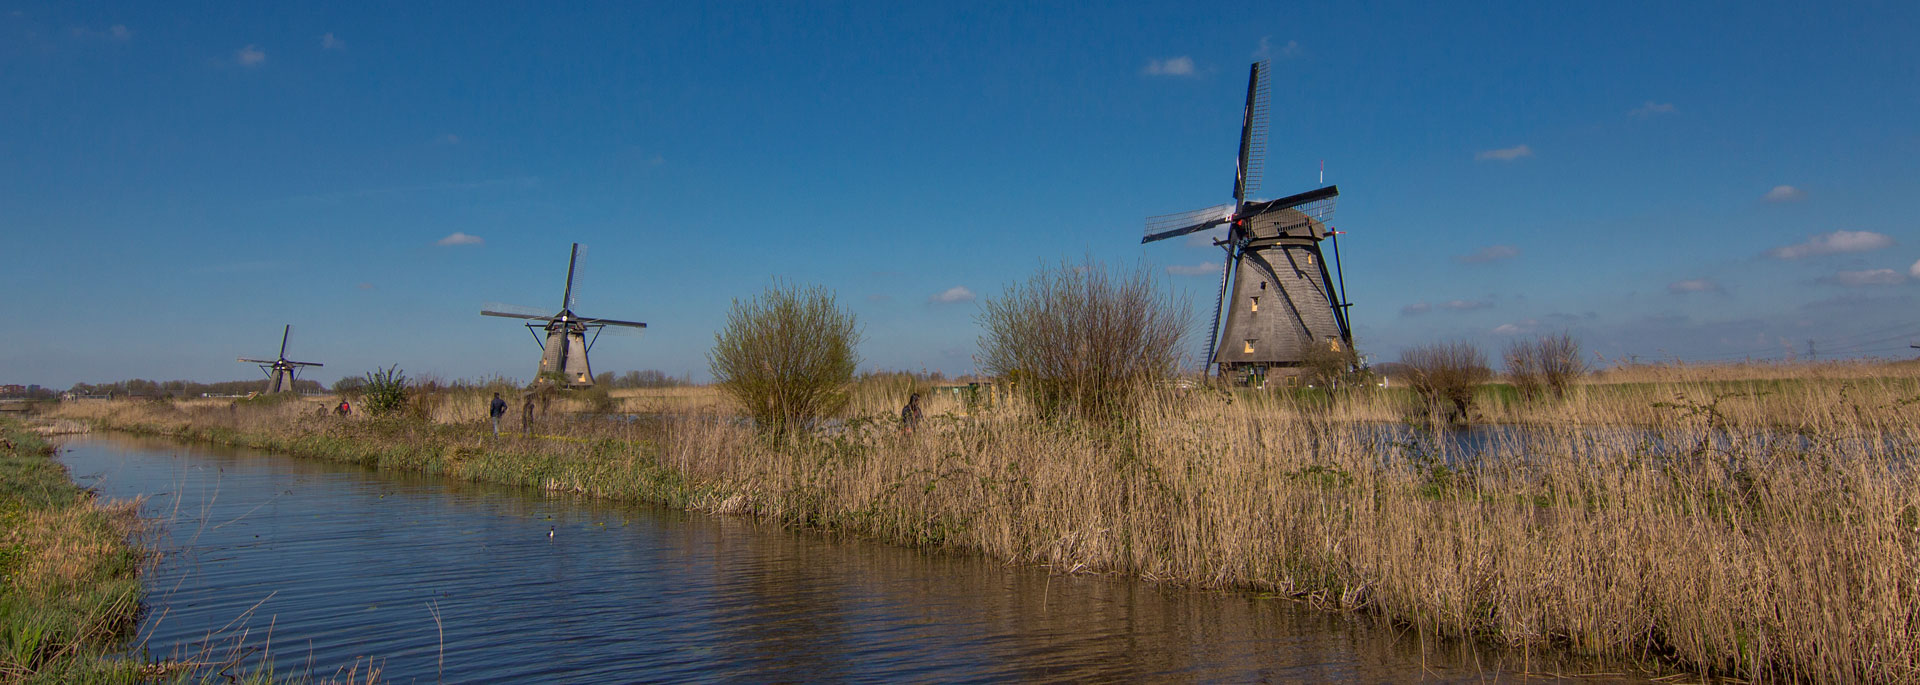 Fotos: Windmühlen vom Kinderdijk, Holland